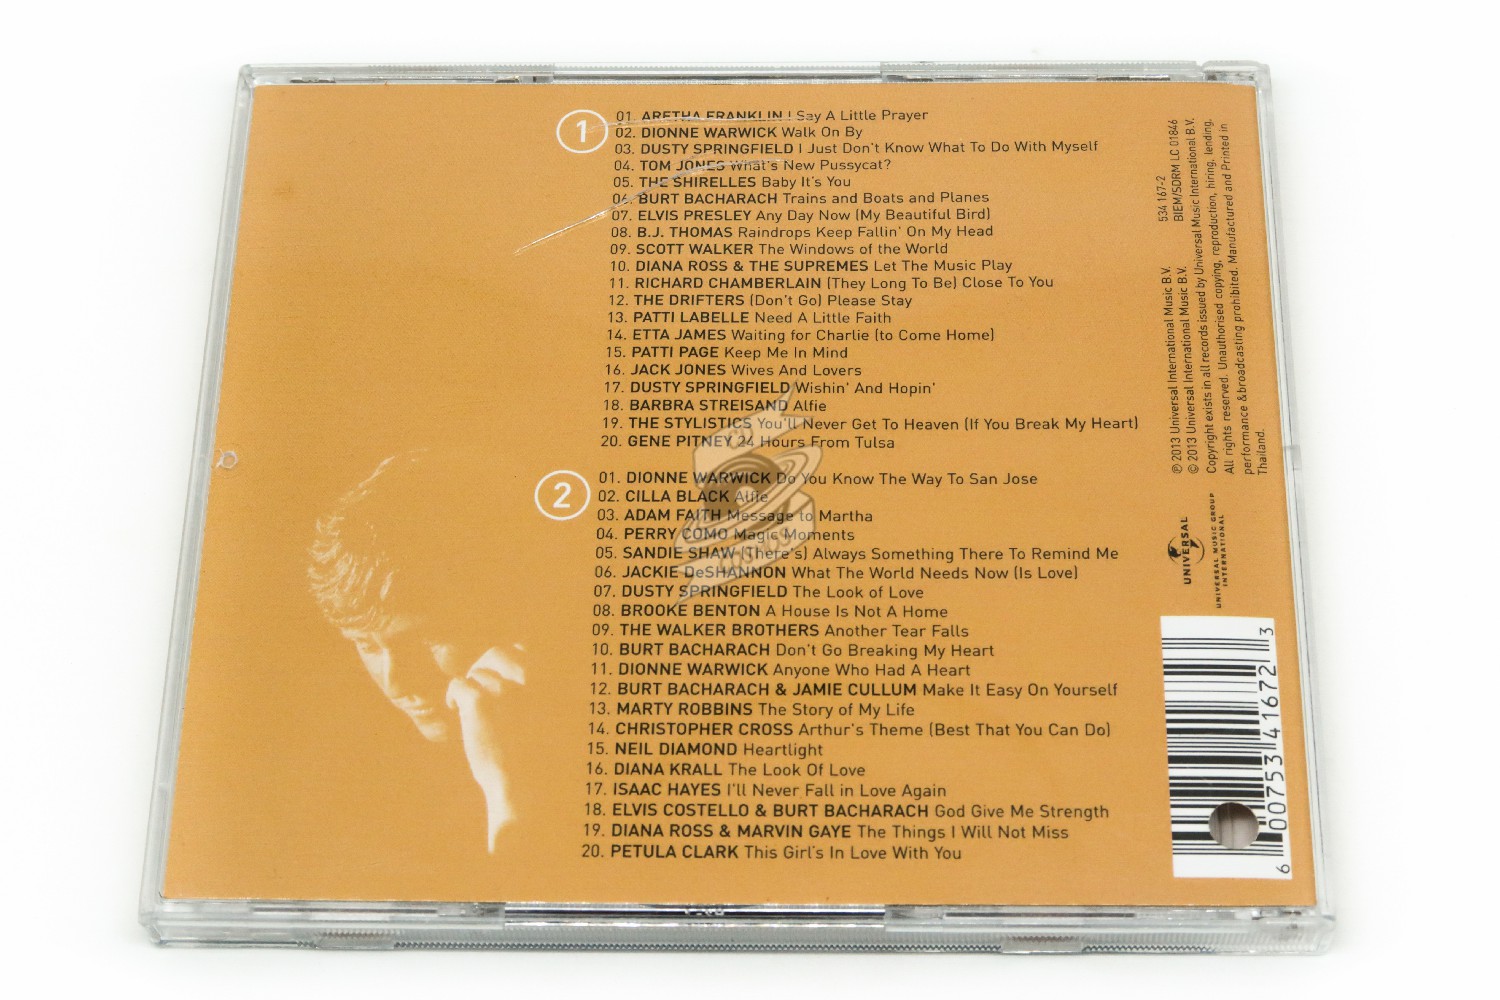 Burt Bacharach - Anyone Who Had A Heart - cdcosmos